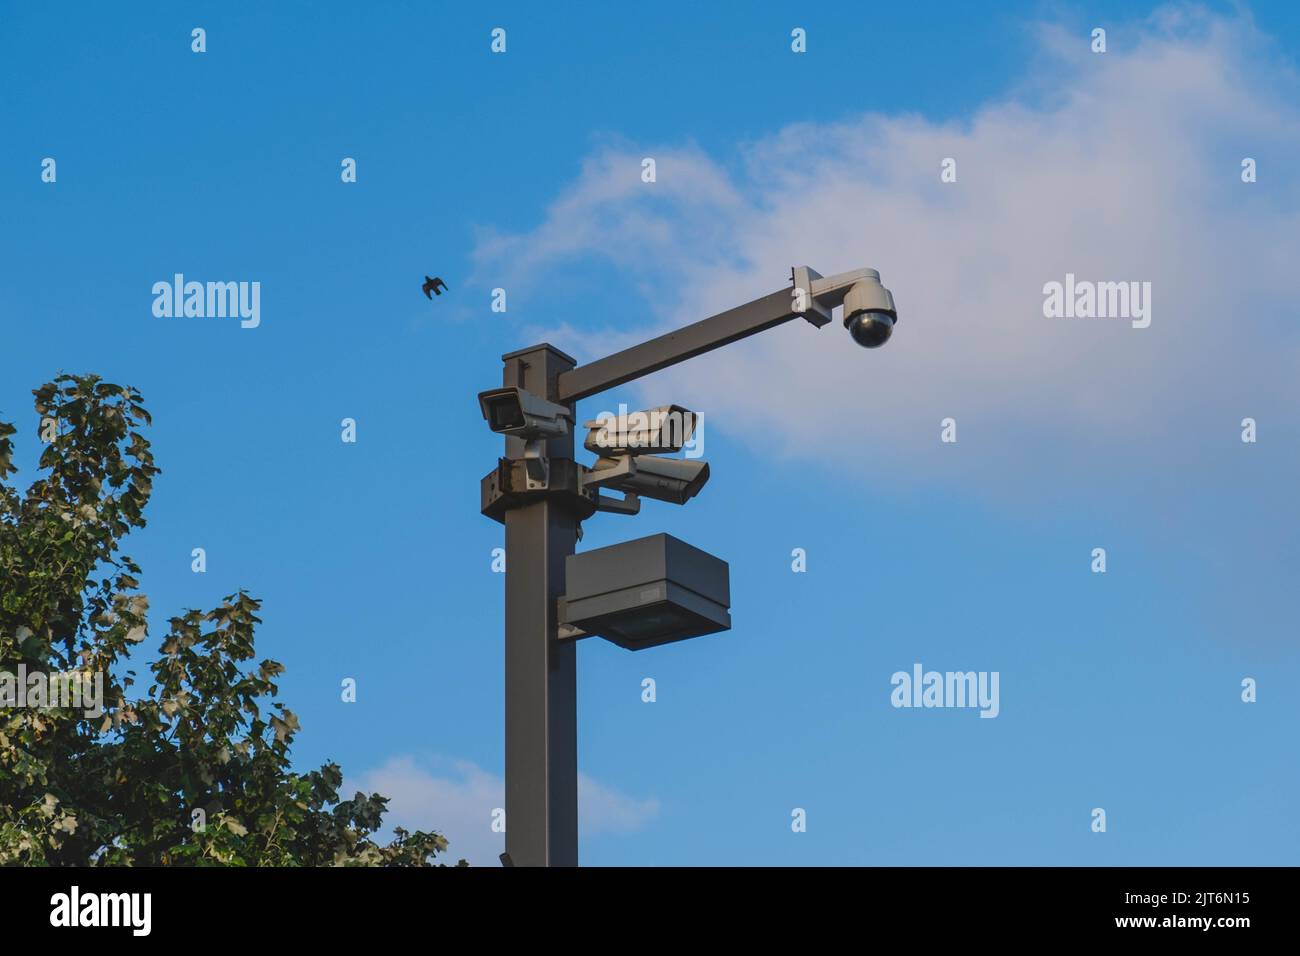 Telecamere di sorveglianza sul lampione con cielo blu e un uccello in volo Foto Stock